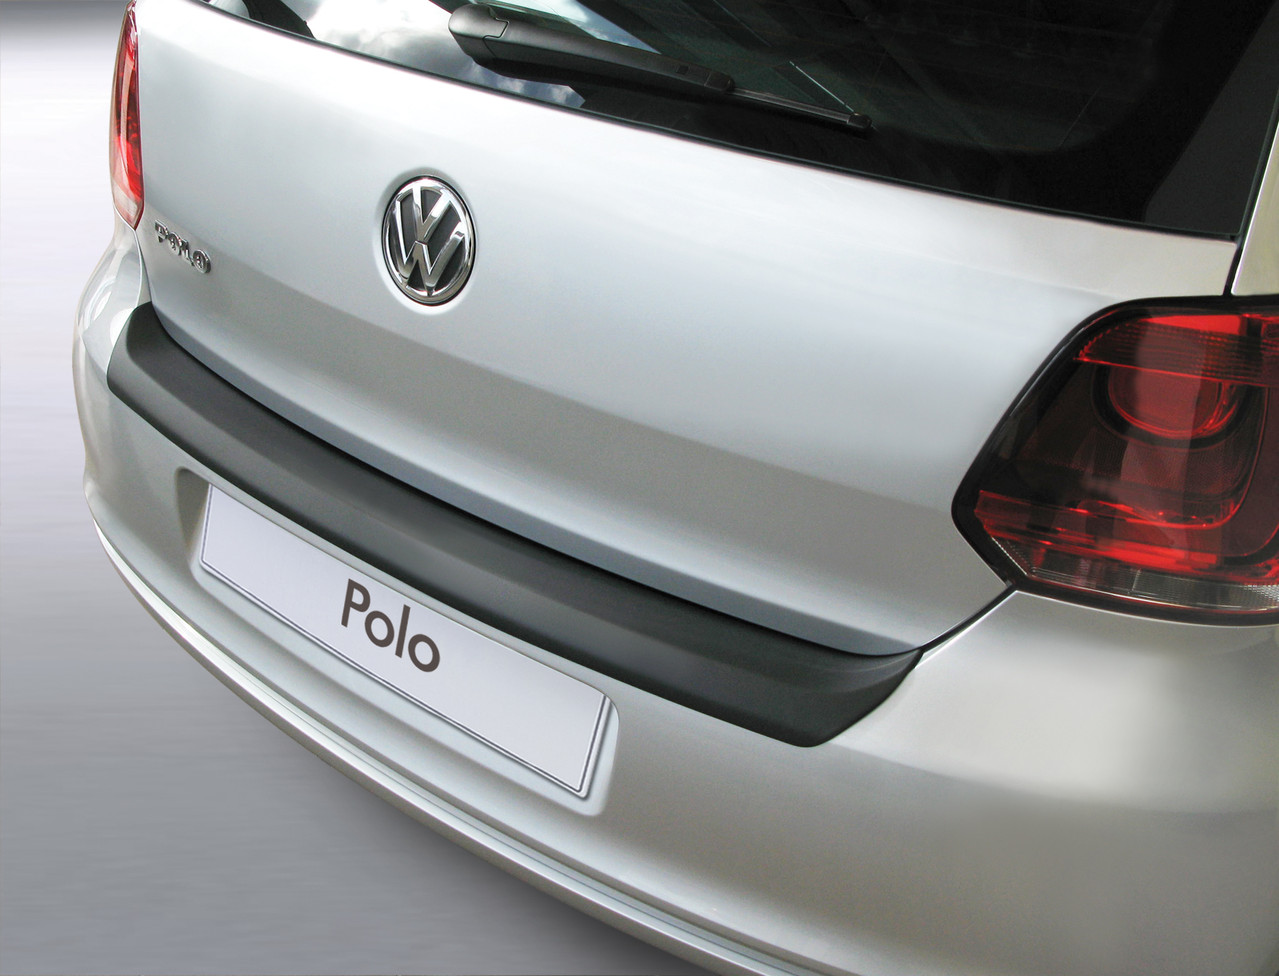 für Ladekante Ihres Schutz VW für Fahrzeuges - POLO Ladekantenschutz die